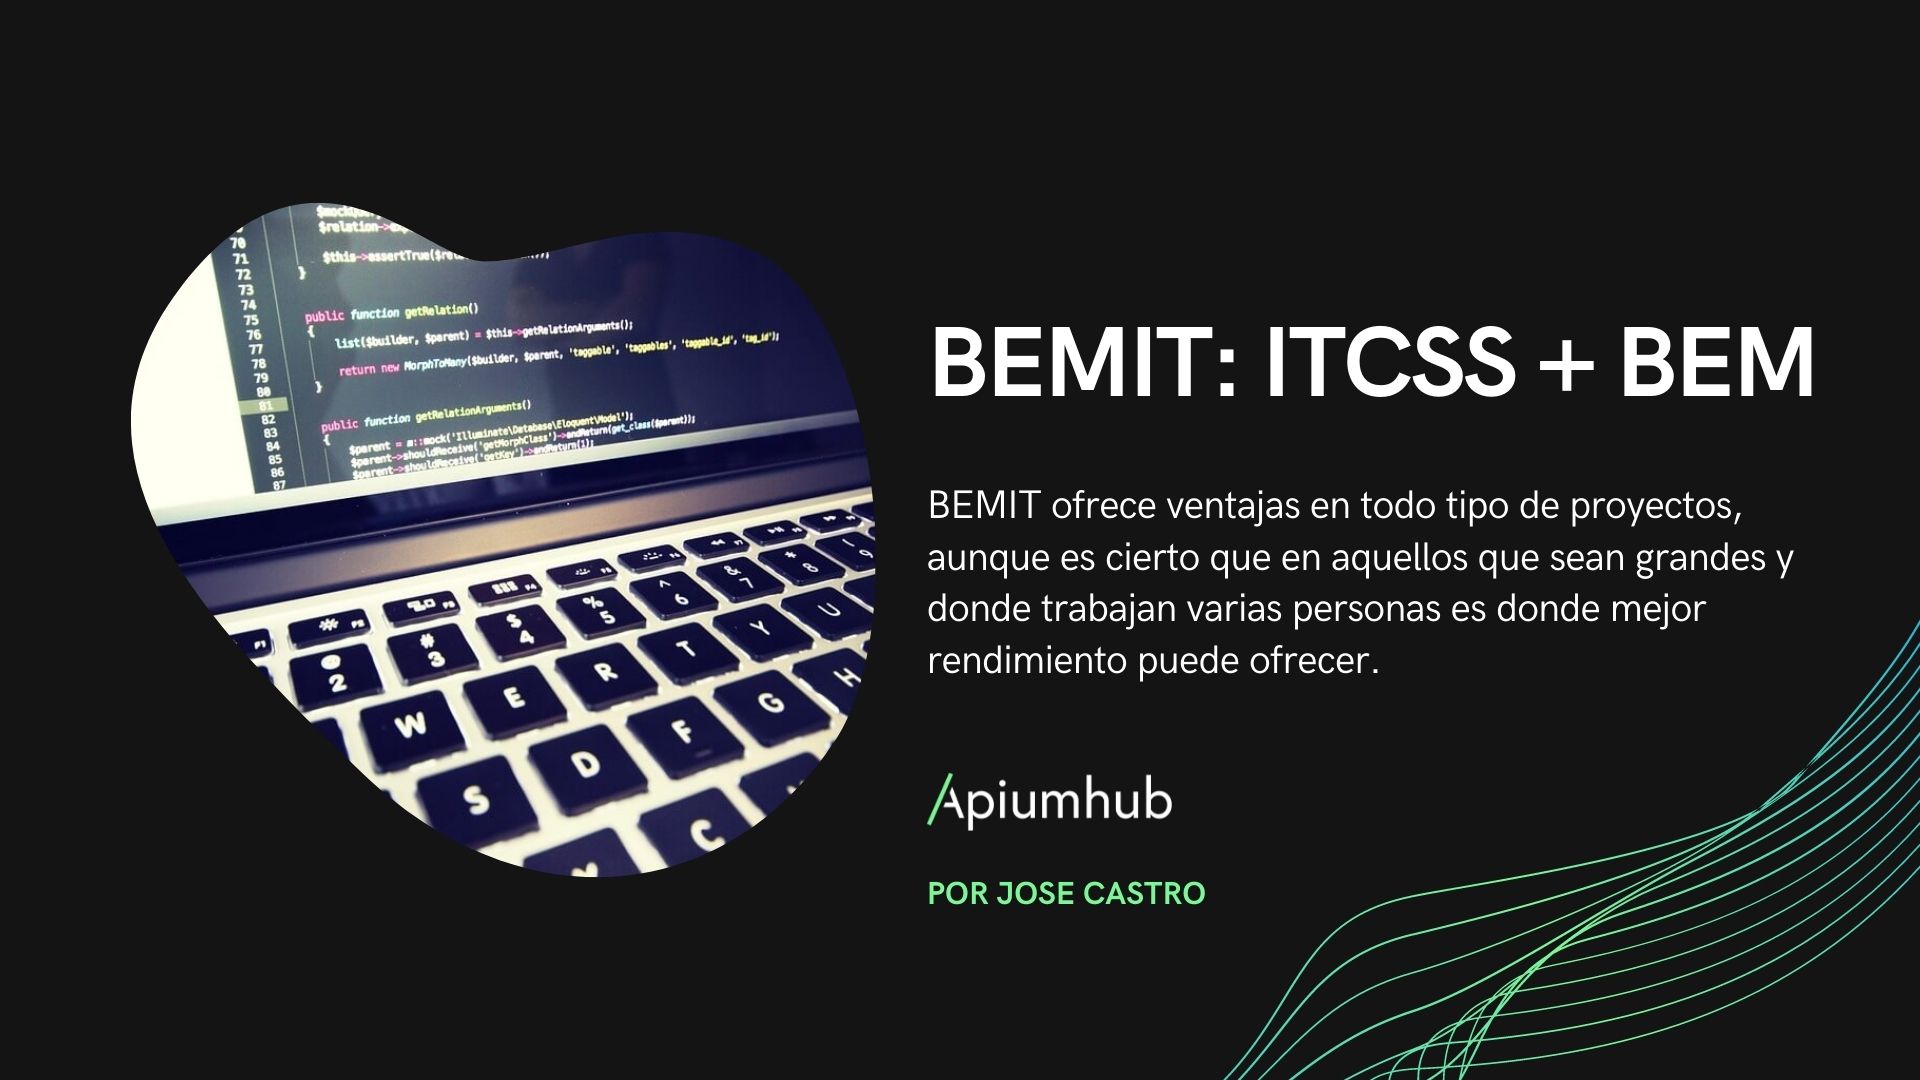 Explaining BEMIT: ITCSS + BEM